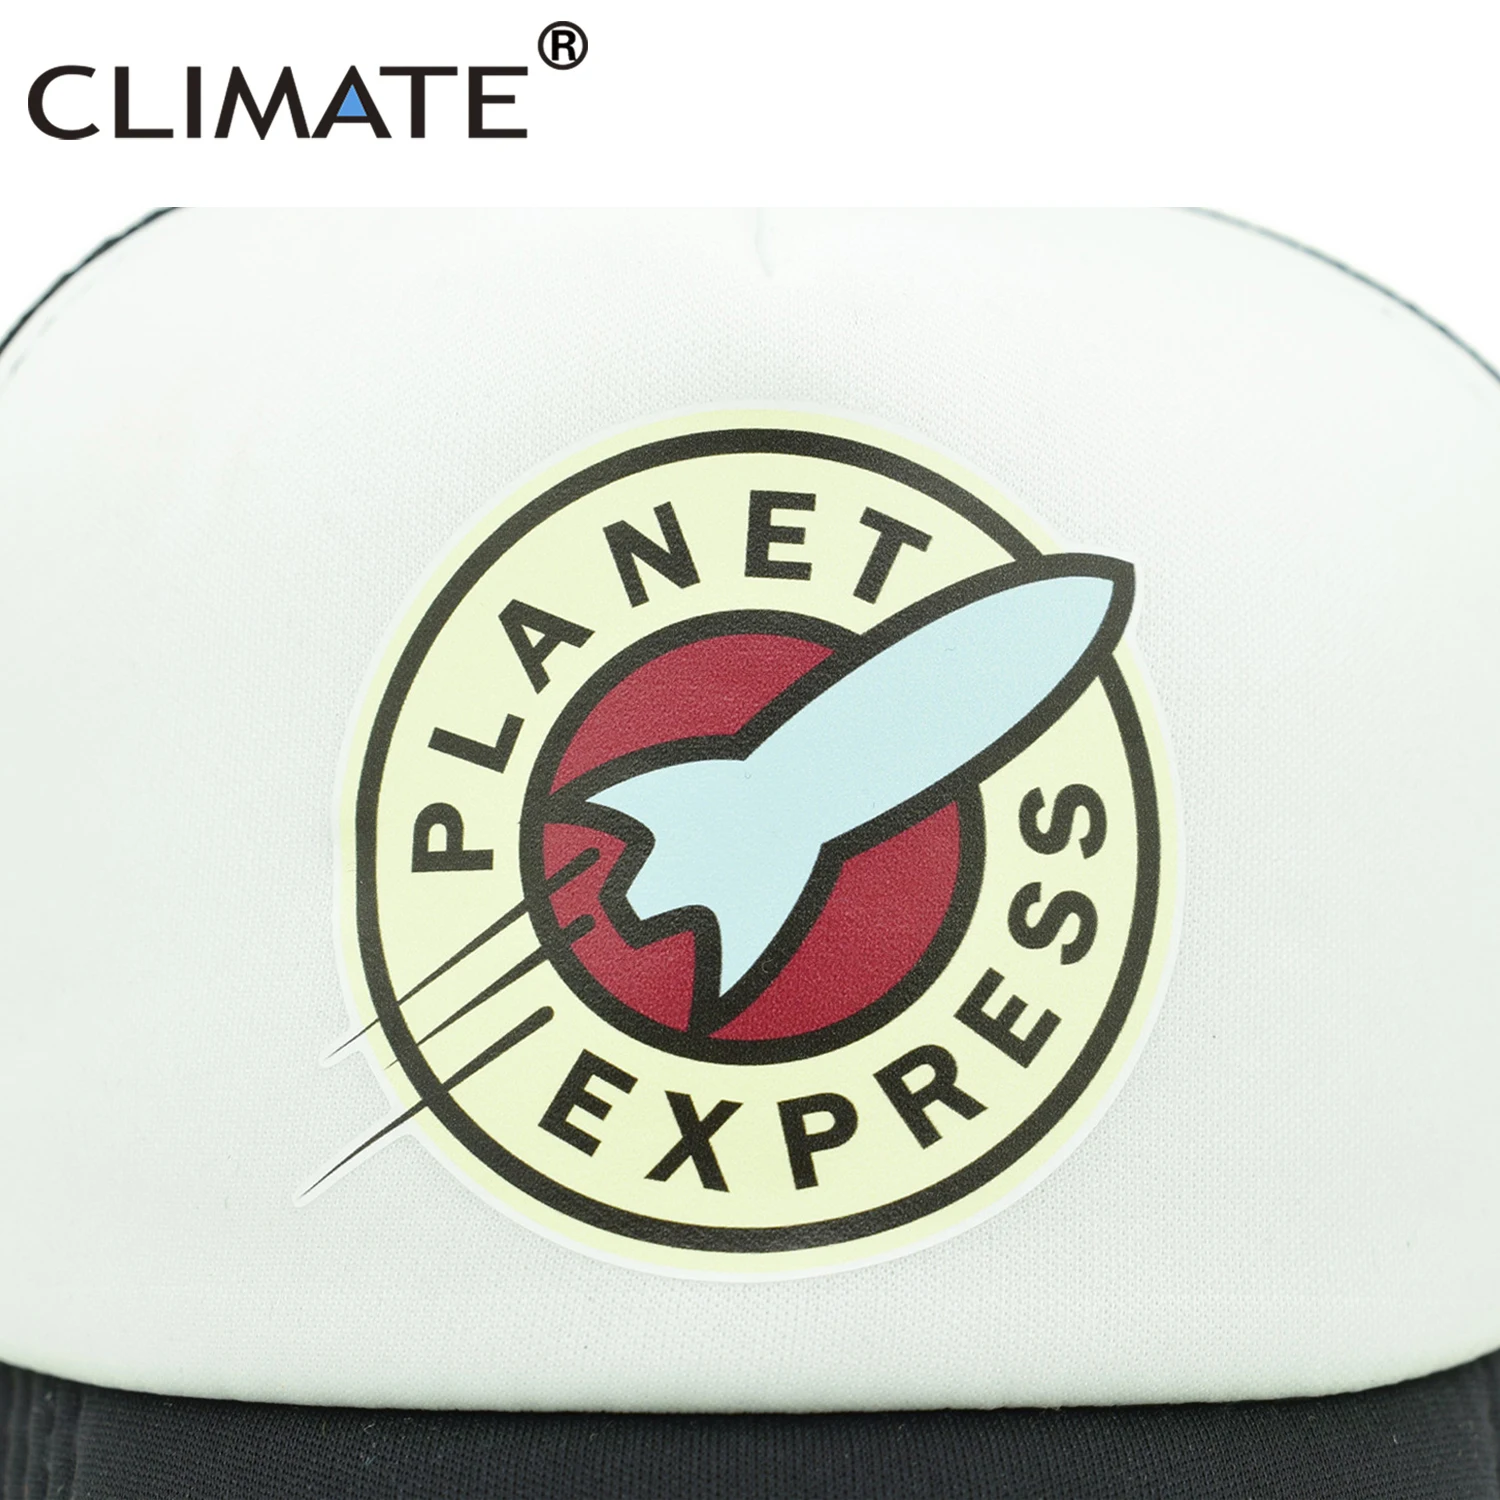 KLIMA Planet Express Trucker Cap, Hat Sjove Plads Mesh Caps Moskus Raket Rumskib til at Køle om Sommeren Caps hatte til Mænd, Kvinder